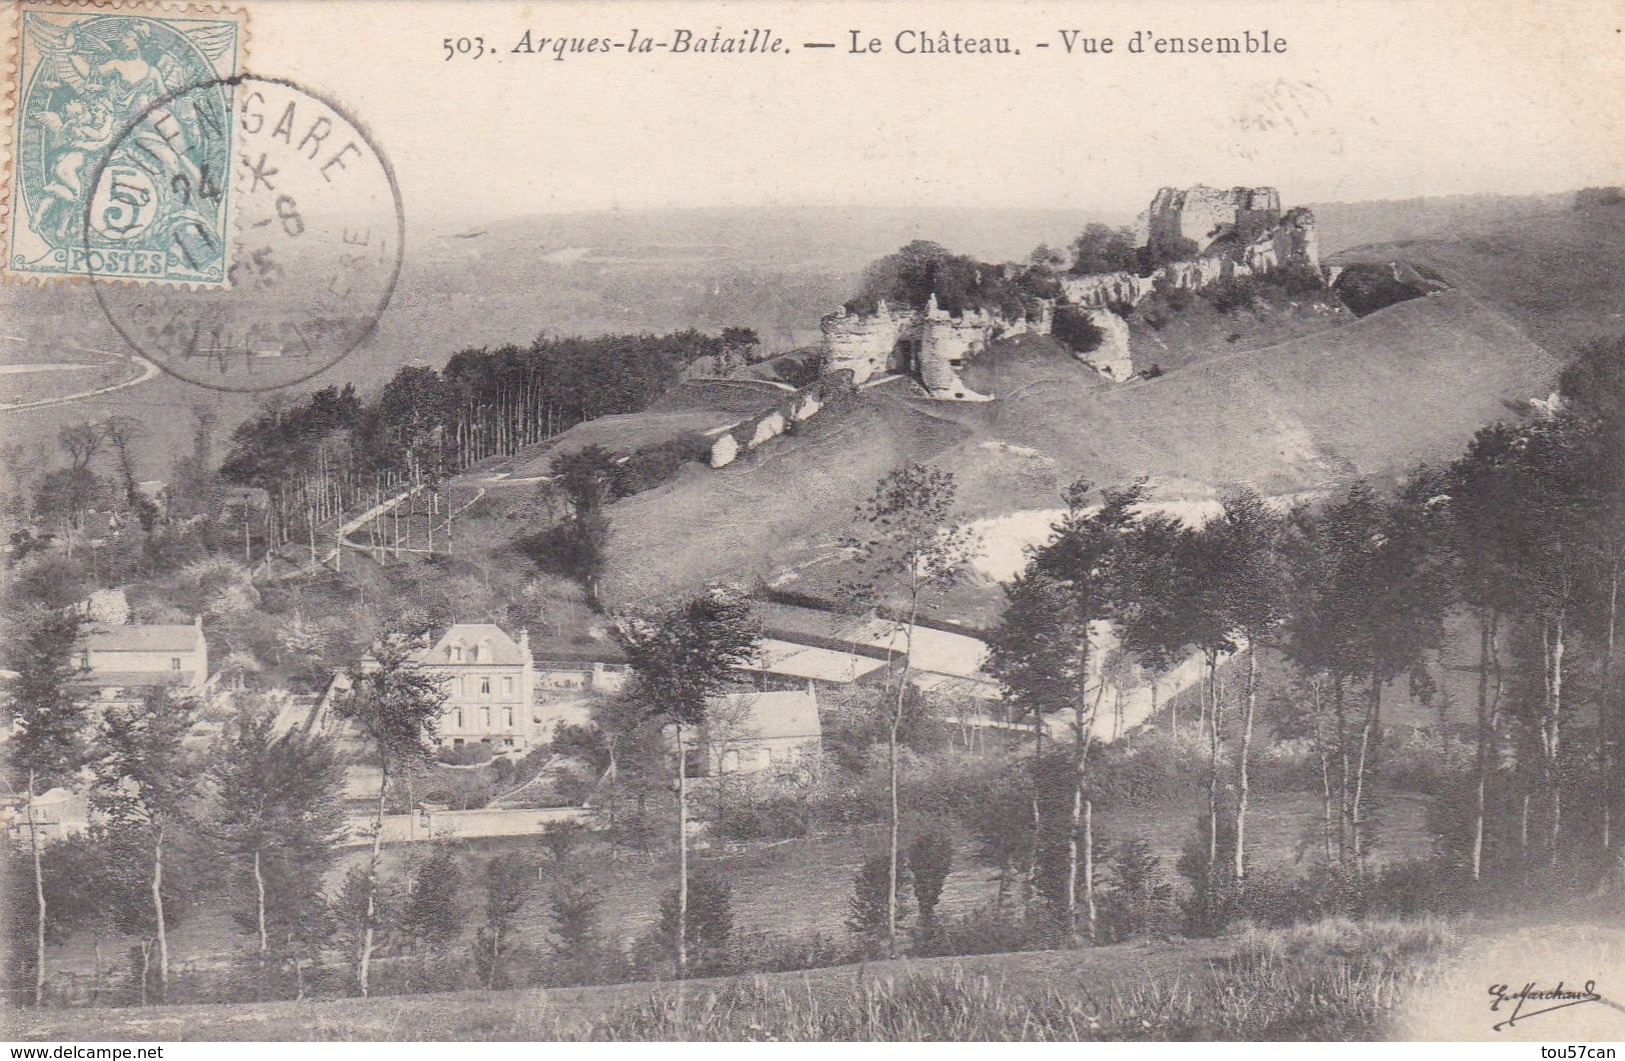 ARQUES LA BATAILLE - SEINE-MARITIME - (76)  - CPA DE 1905. - Arques-la-Bataille